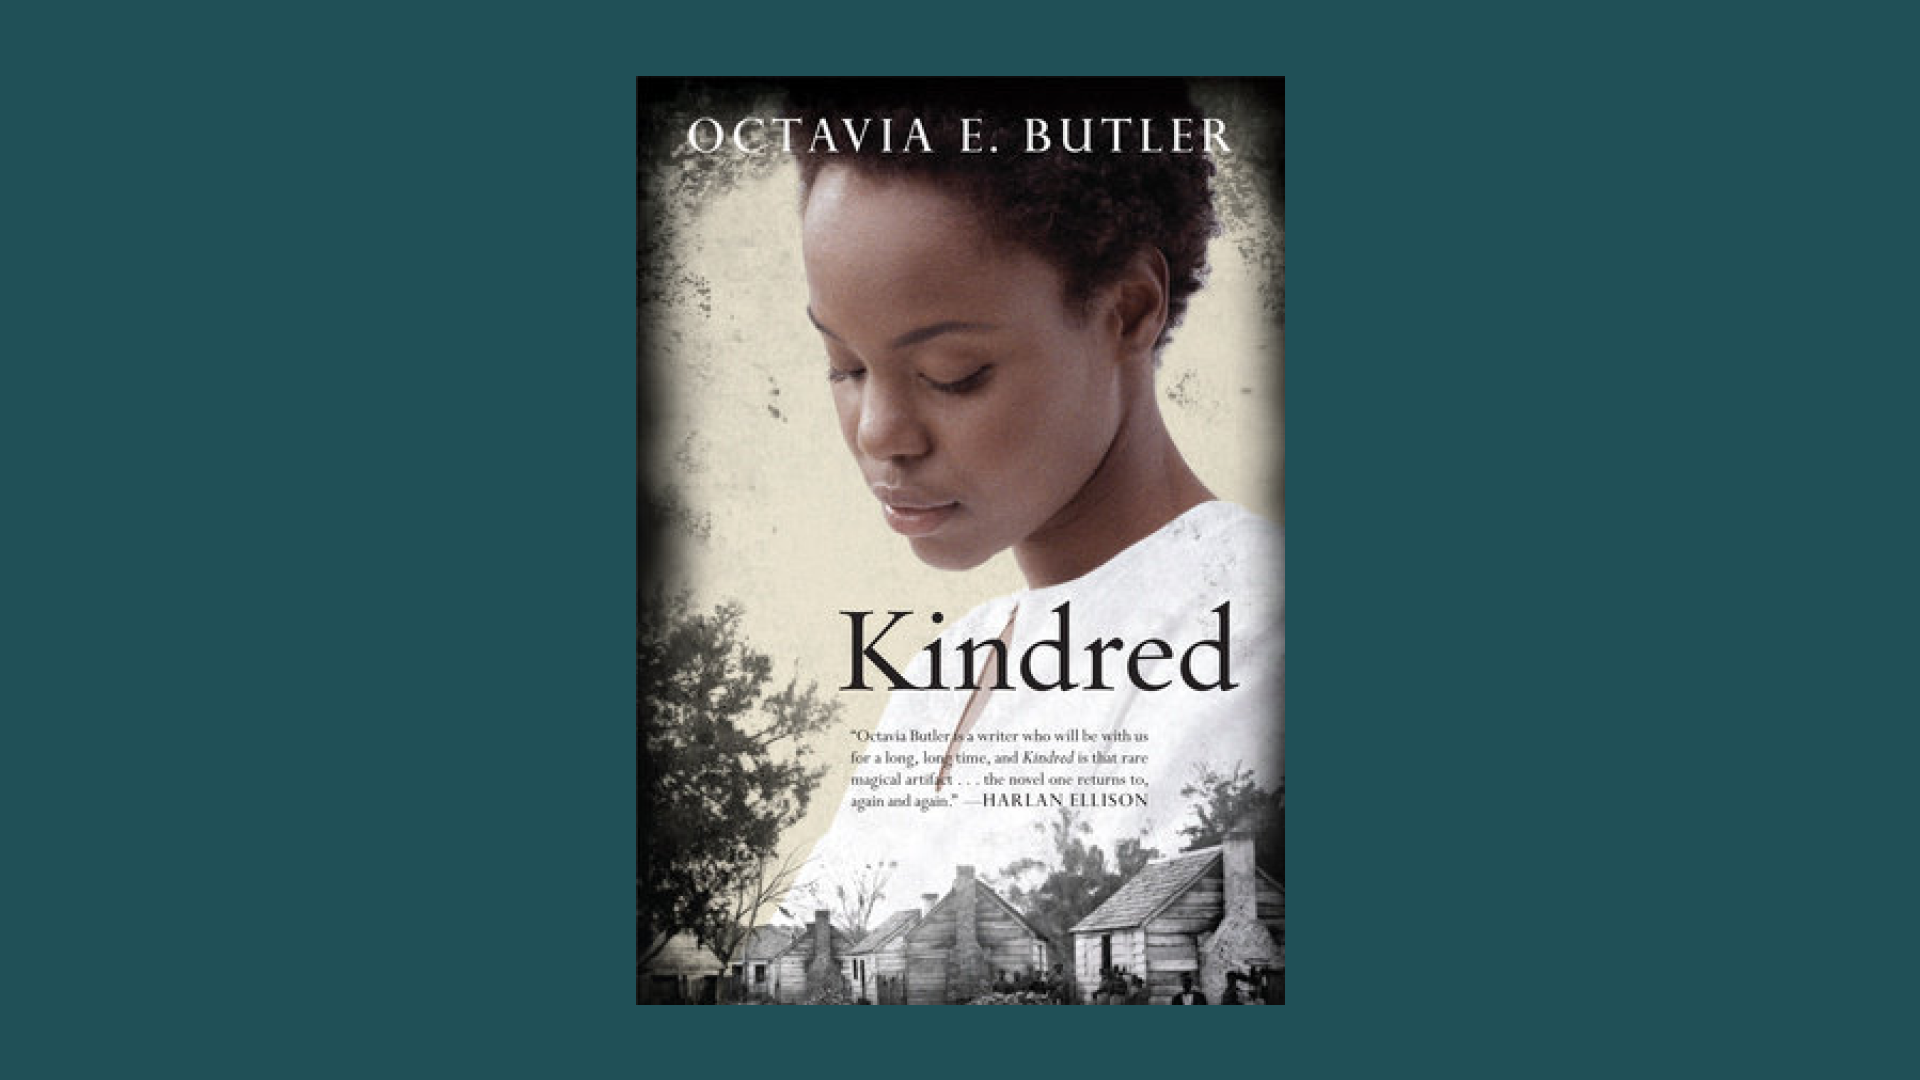 “Kindred” by Octavia E. Butler